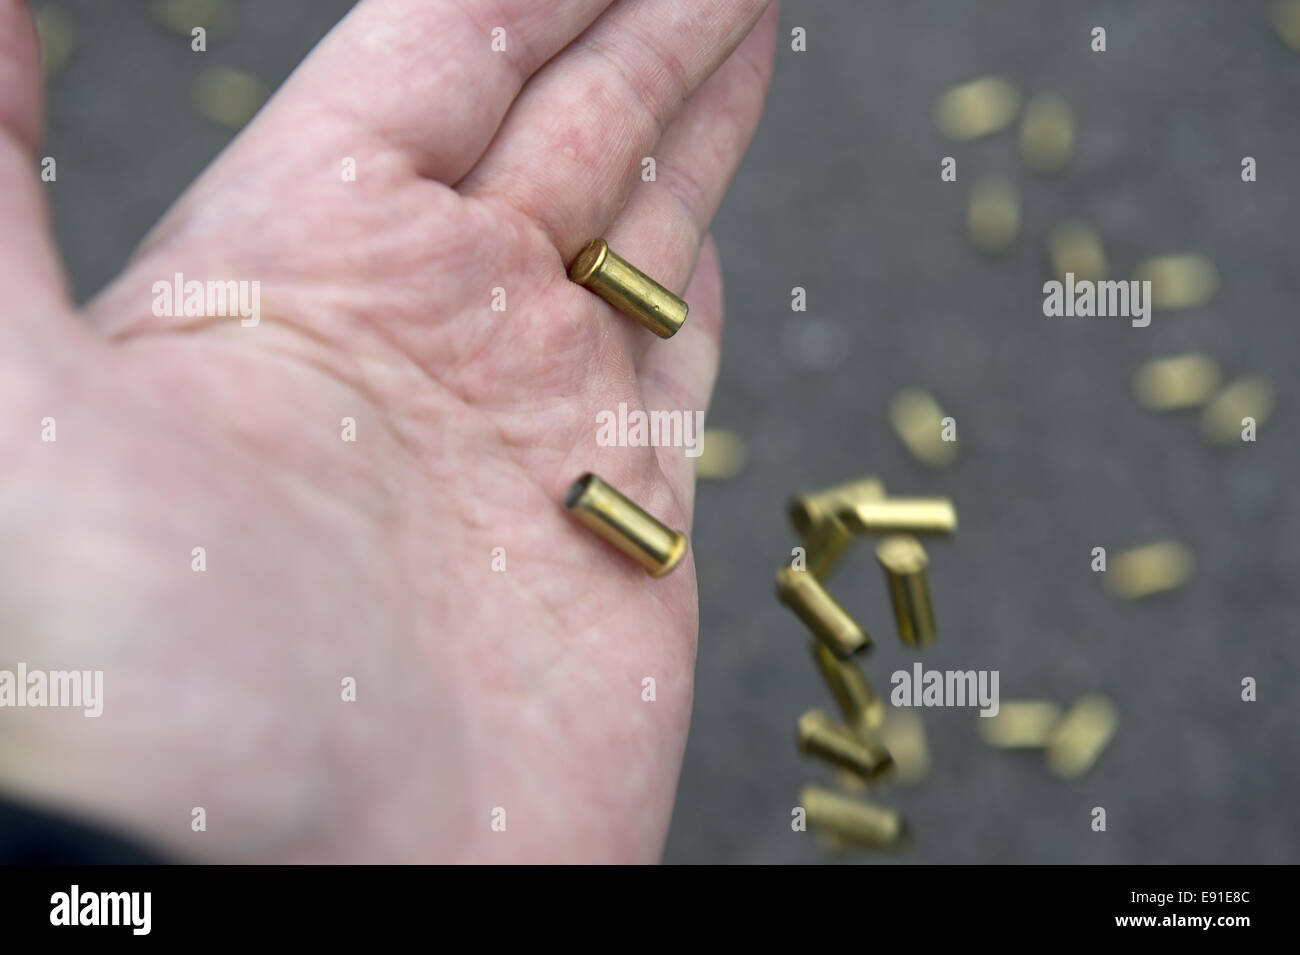 ammunition sleeves Stock Photo